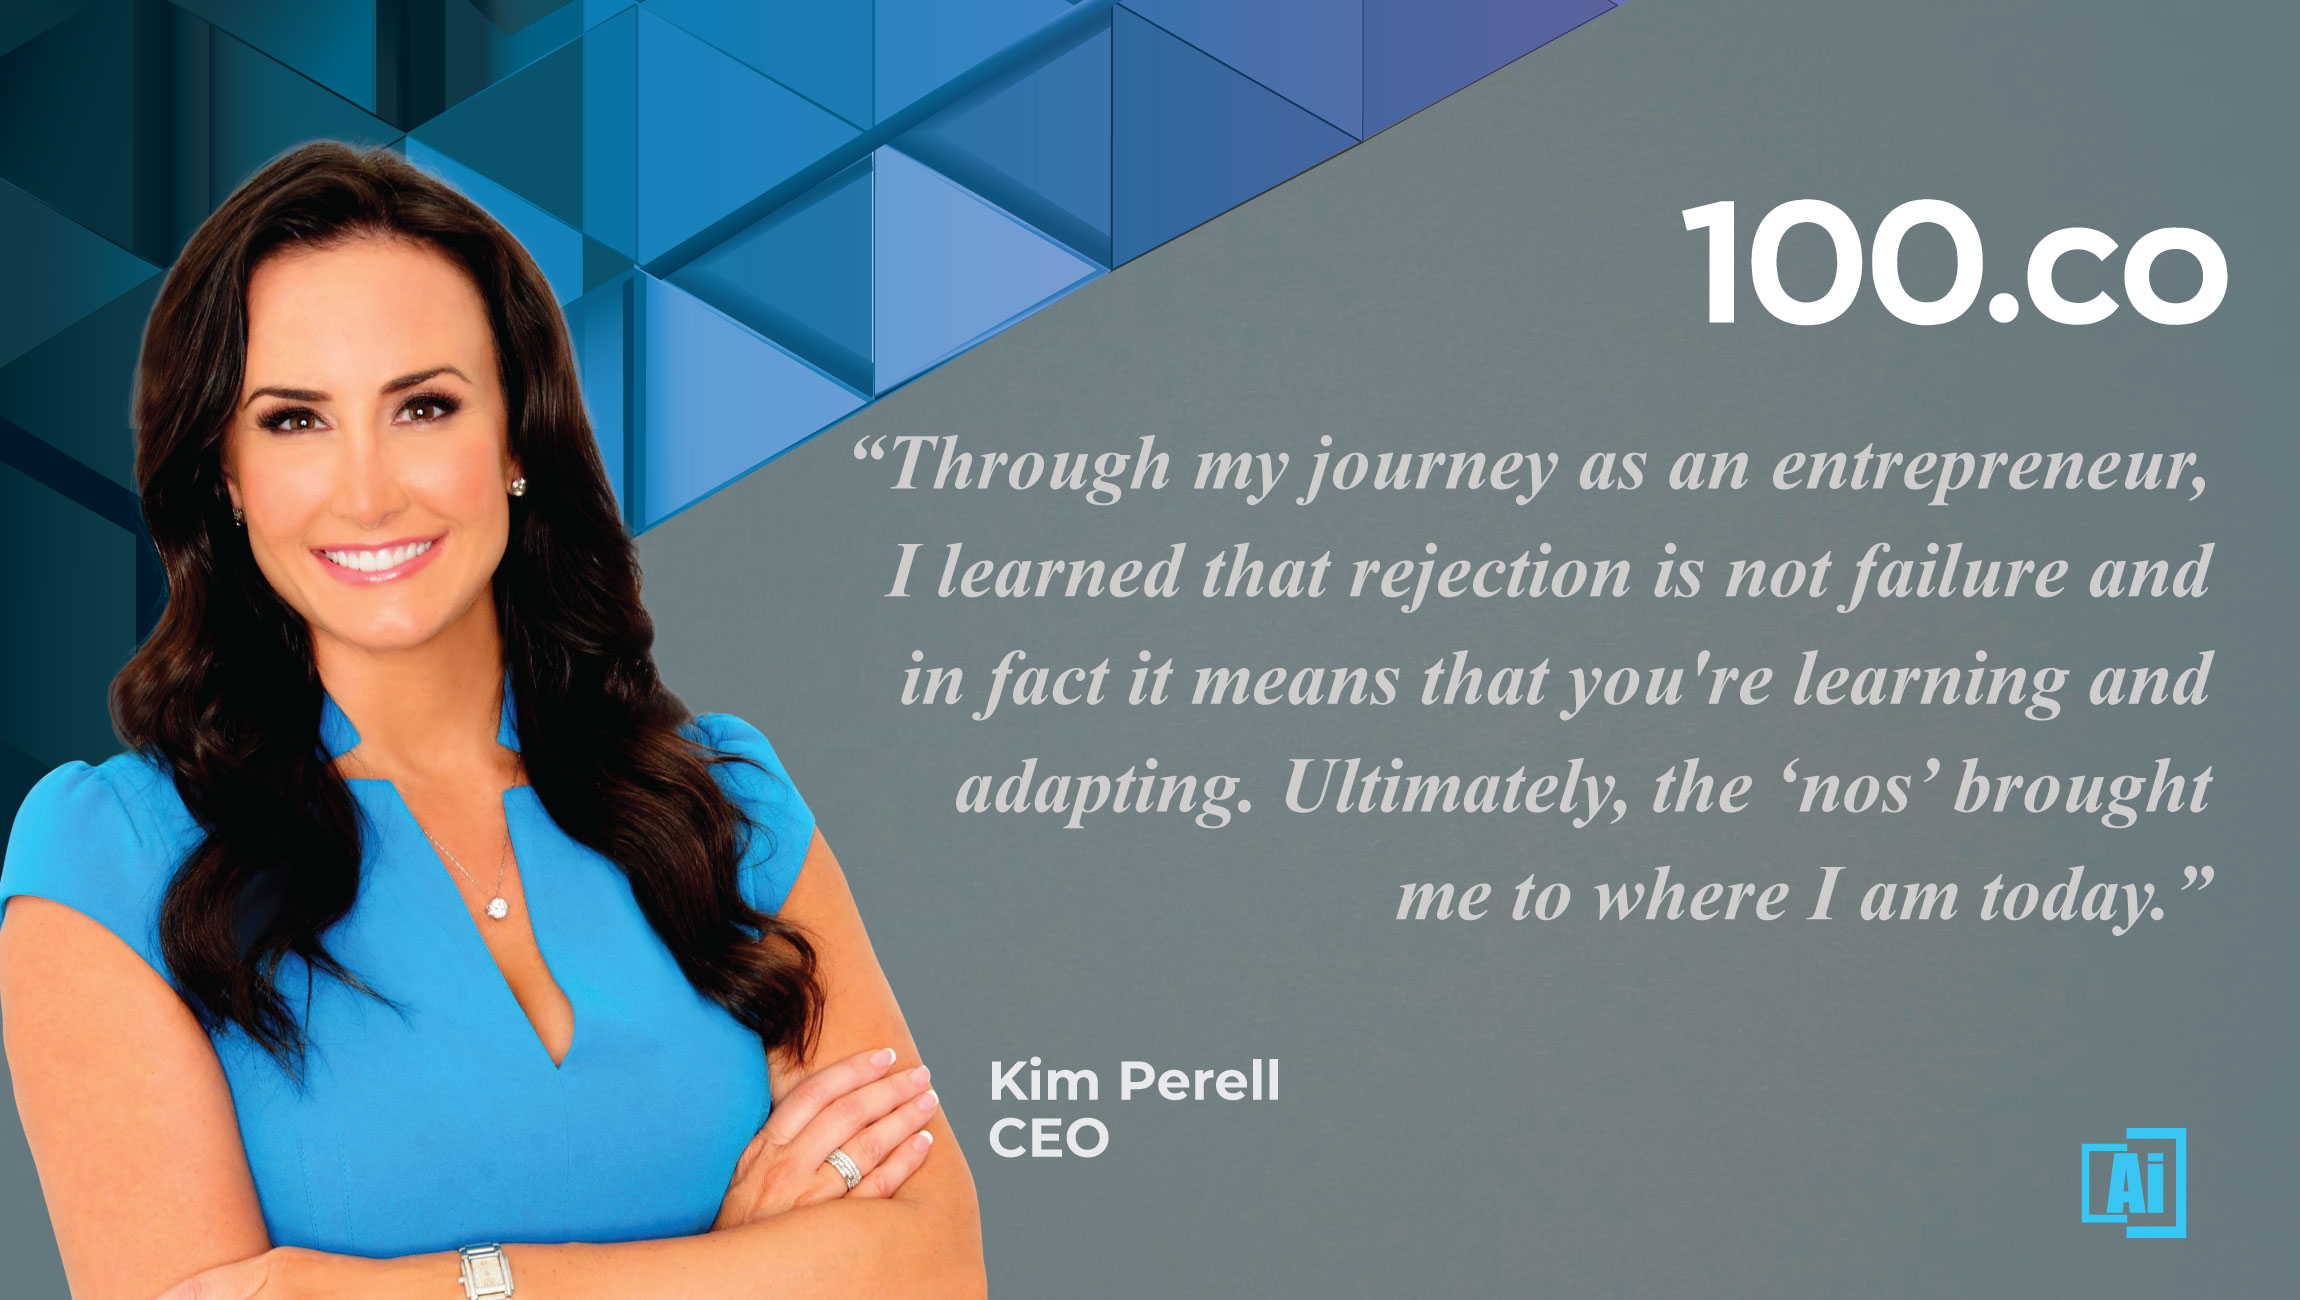 Kim Perell, CEO, 100.co